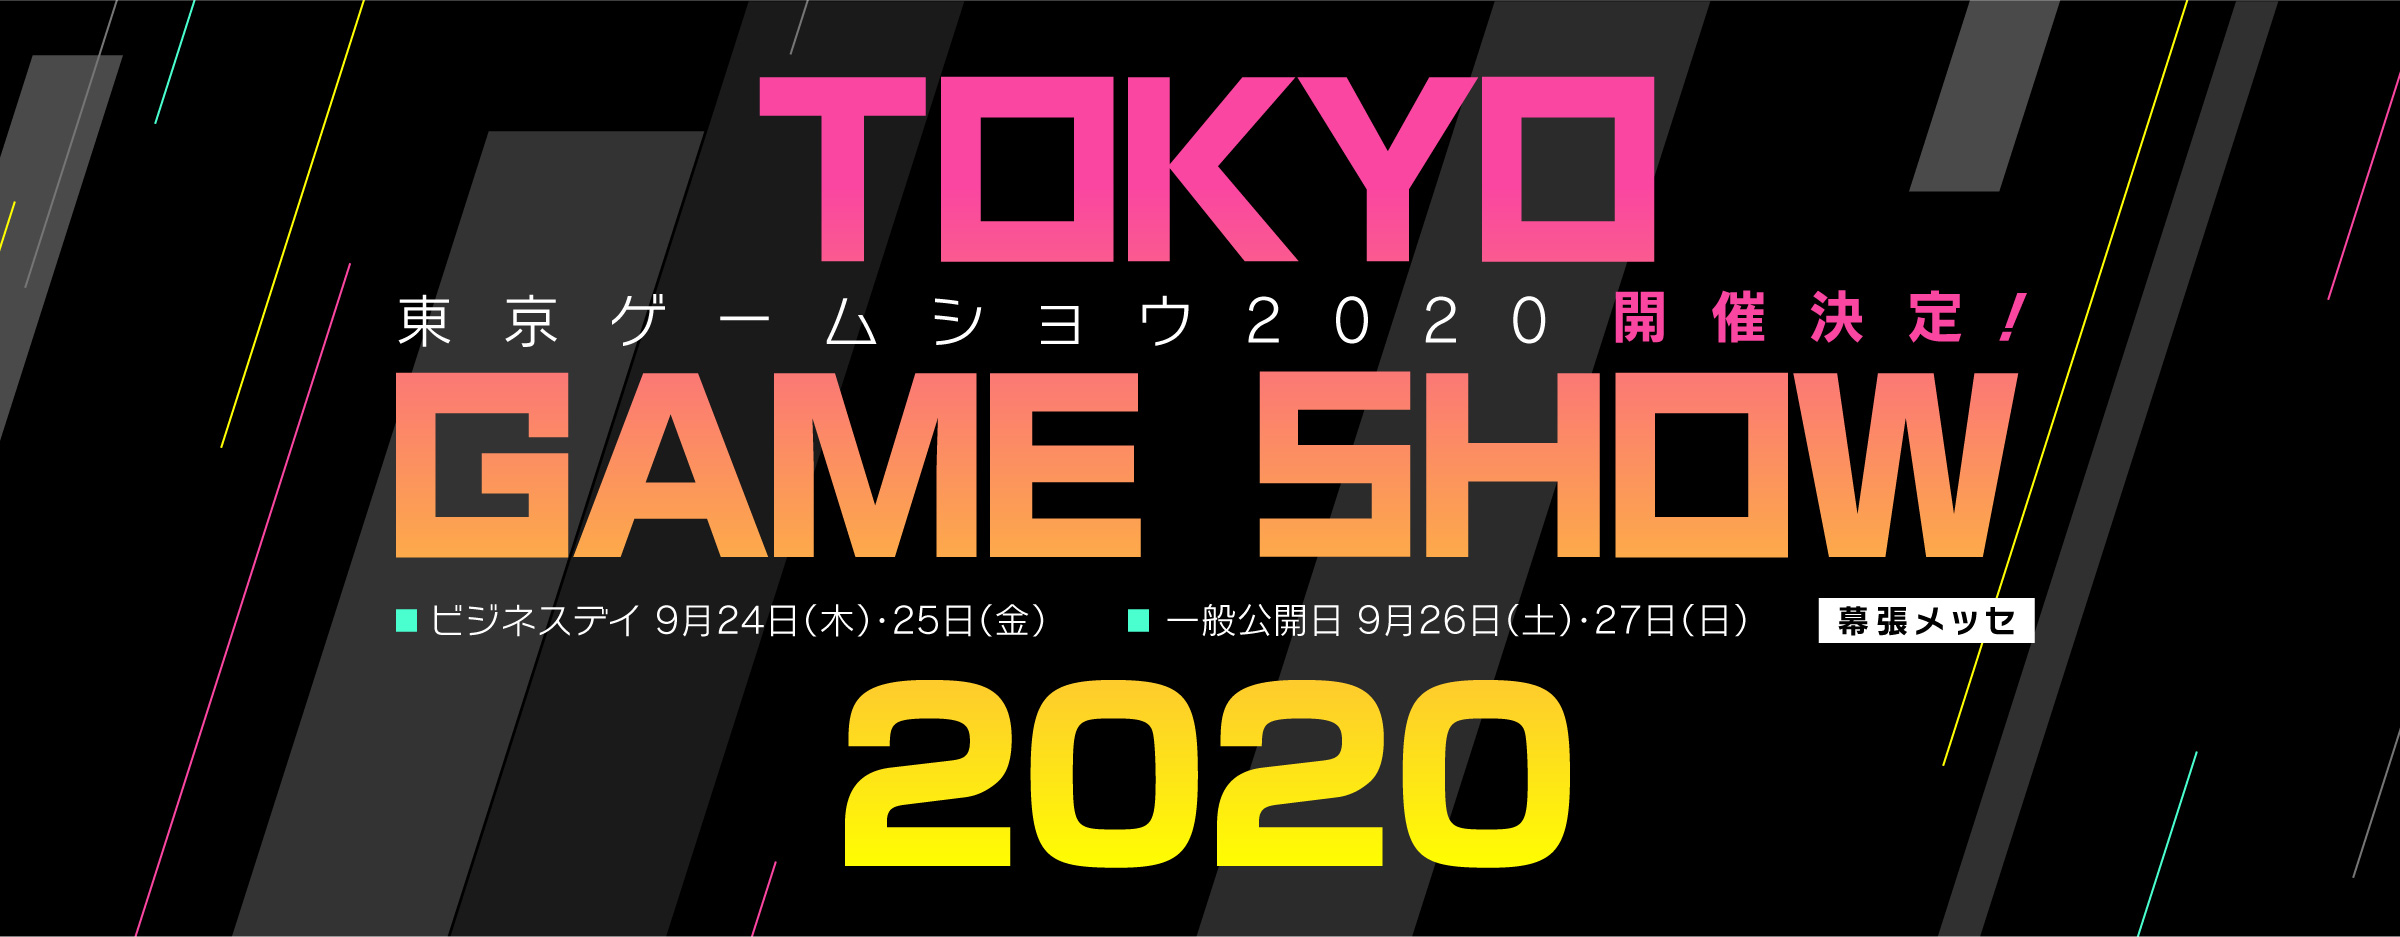 东京电玩展官网上线新区域和主题正式公开_游戏